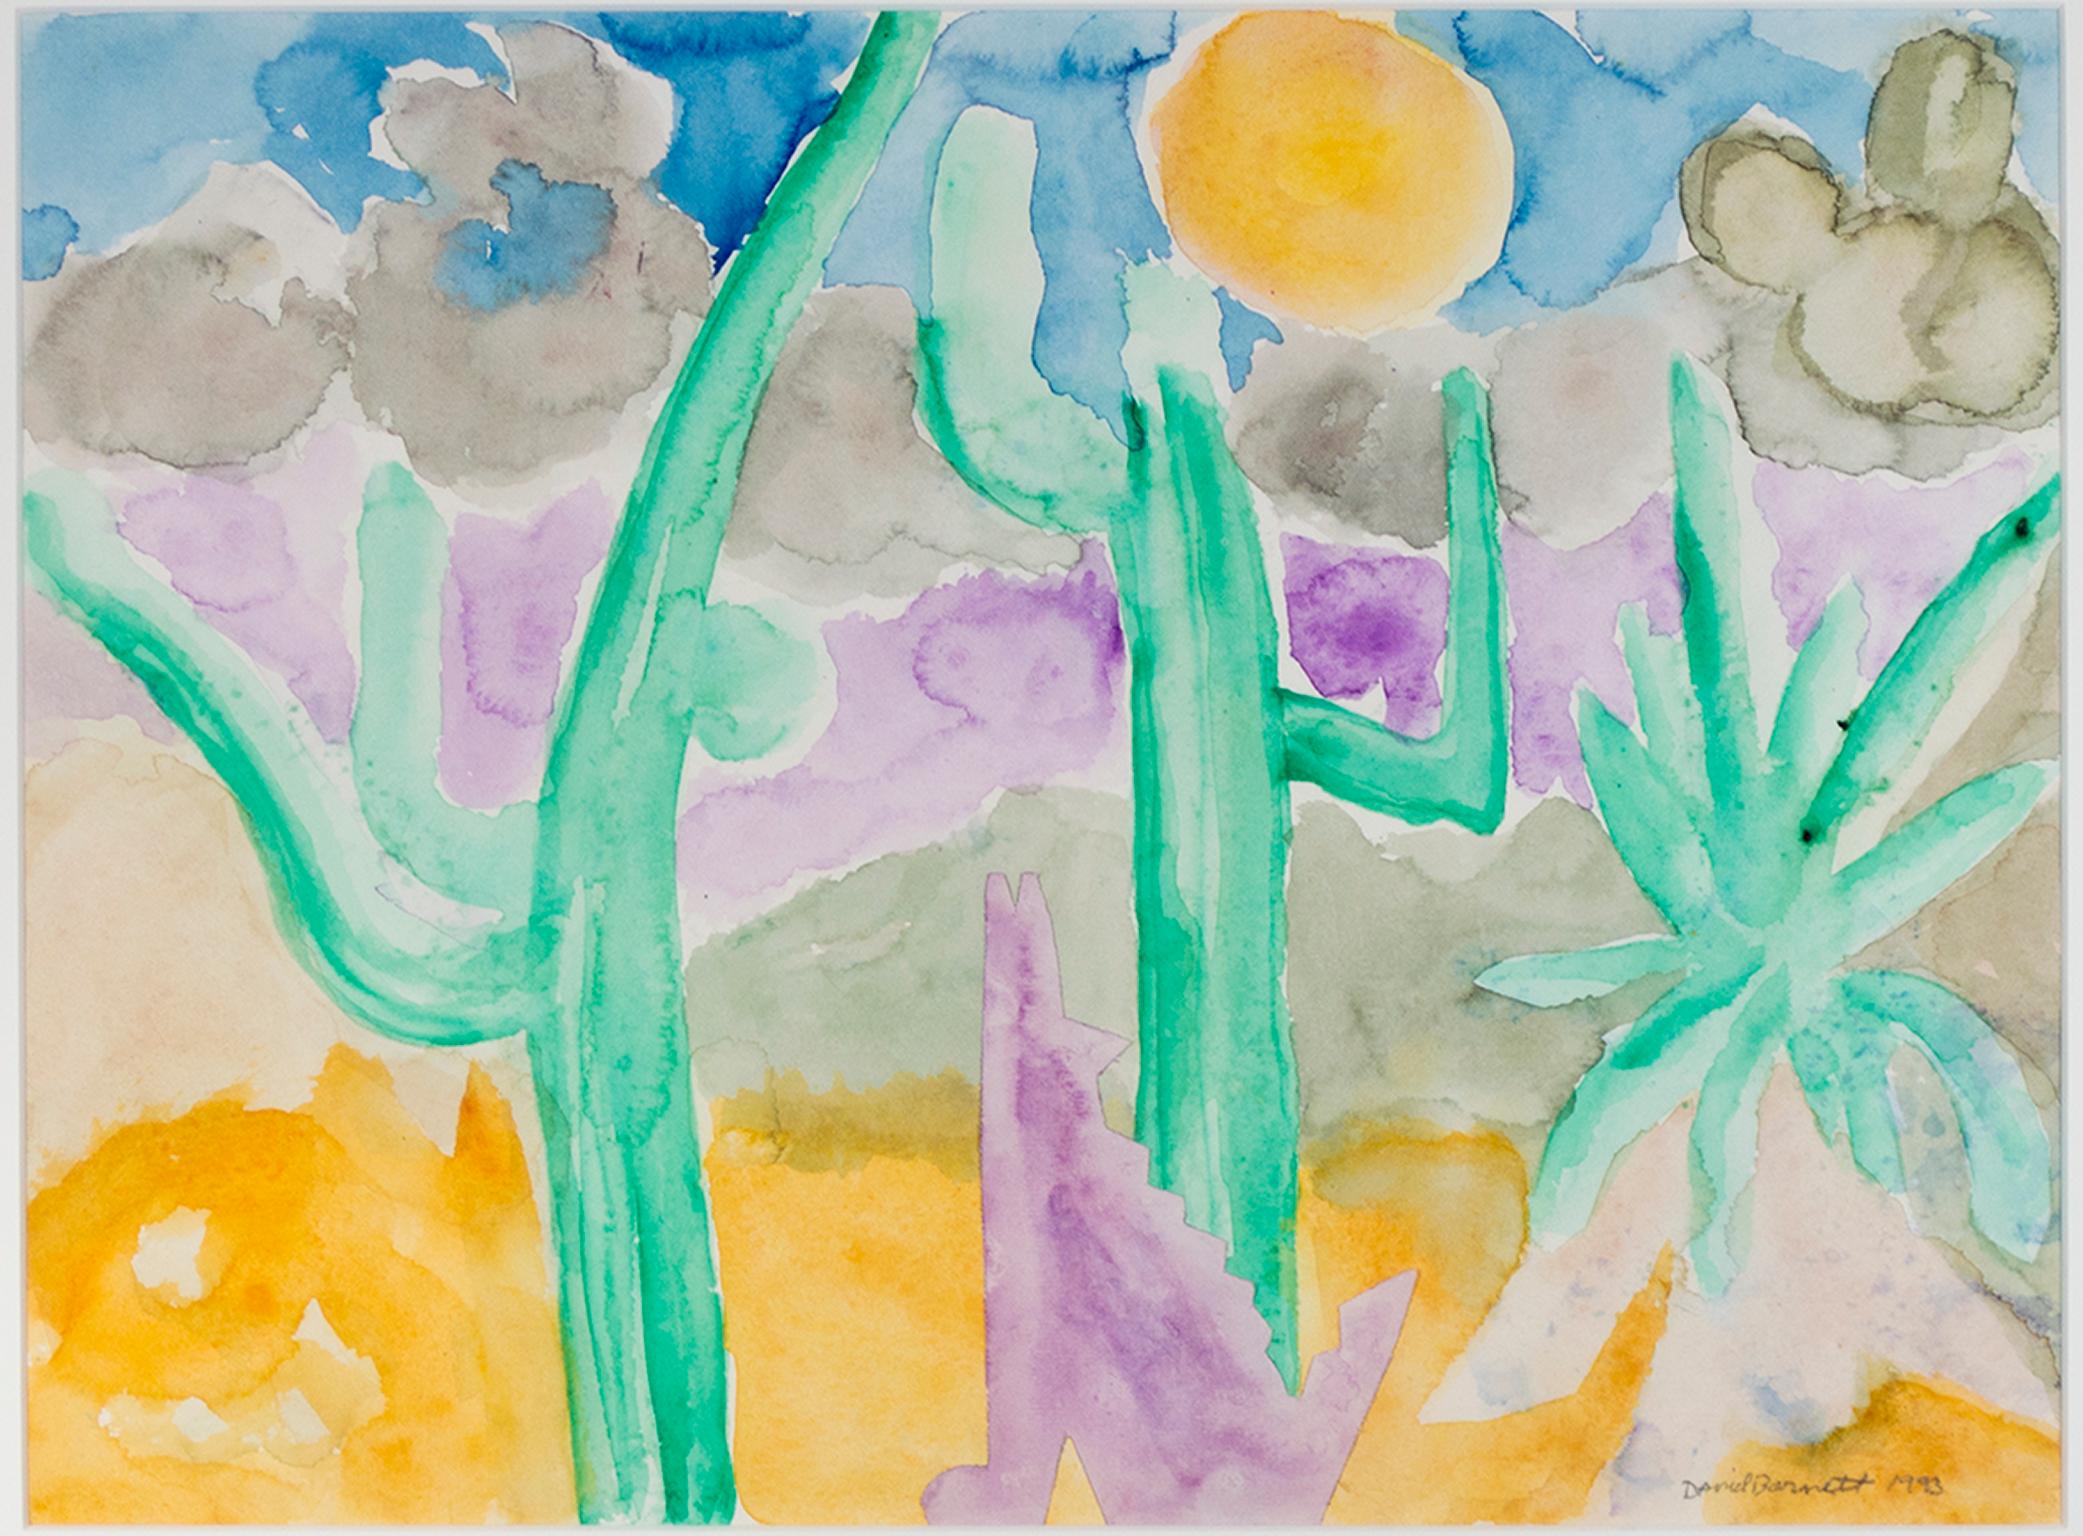 "Dancing Saguaro & Coyote" est une aquarelle originale peinte par David Barnett, signée dans le coin inférieur droit. Le paysage désertique abstrait est rendu par des strates de jaune, vert, violet, bleu et noir purs et vifs. Les formes simplifiées